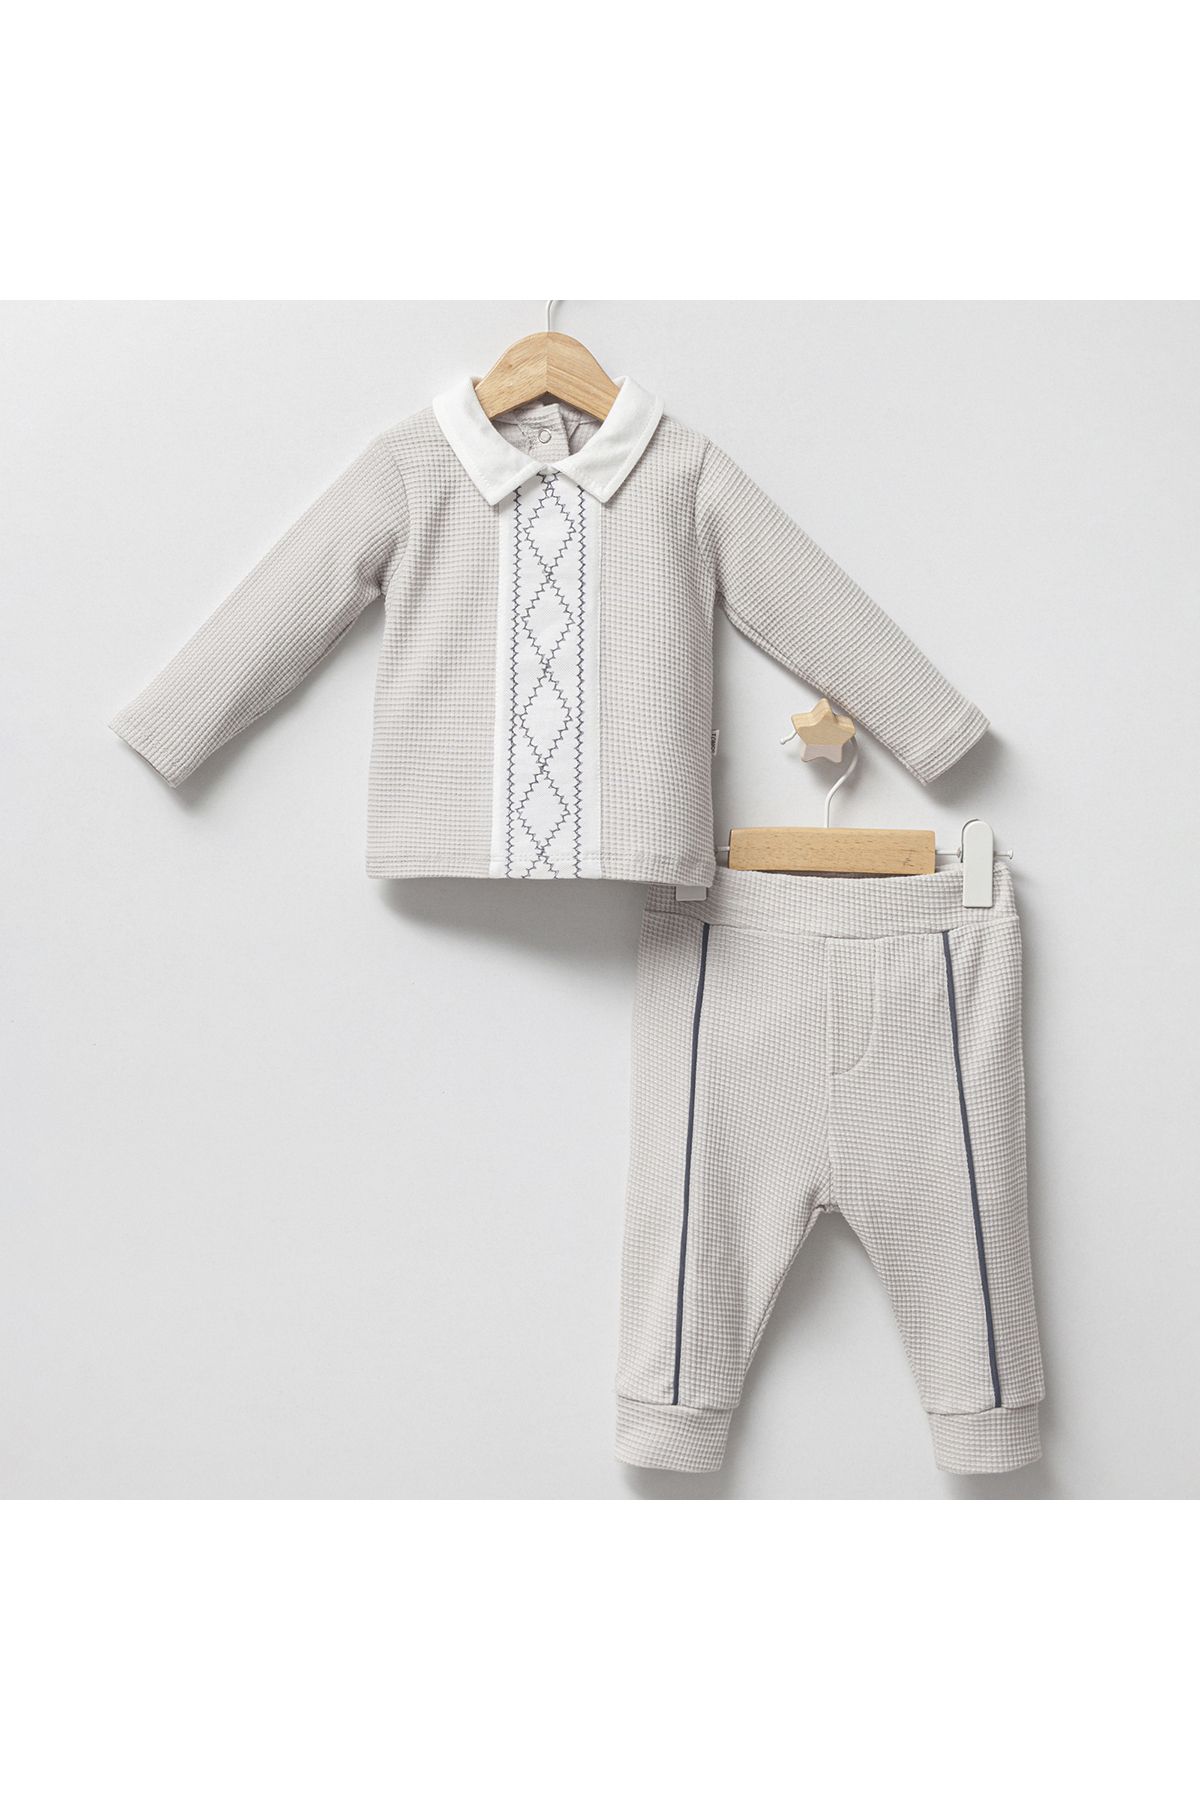 DIDuStore Klasik Şıklık Erkek Bebek Takımı - Rahat ve Şık Tasarım